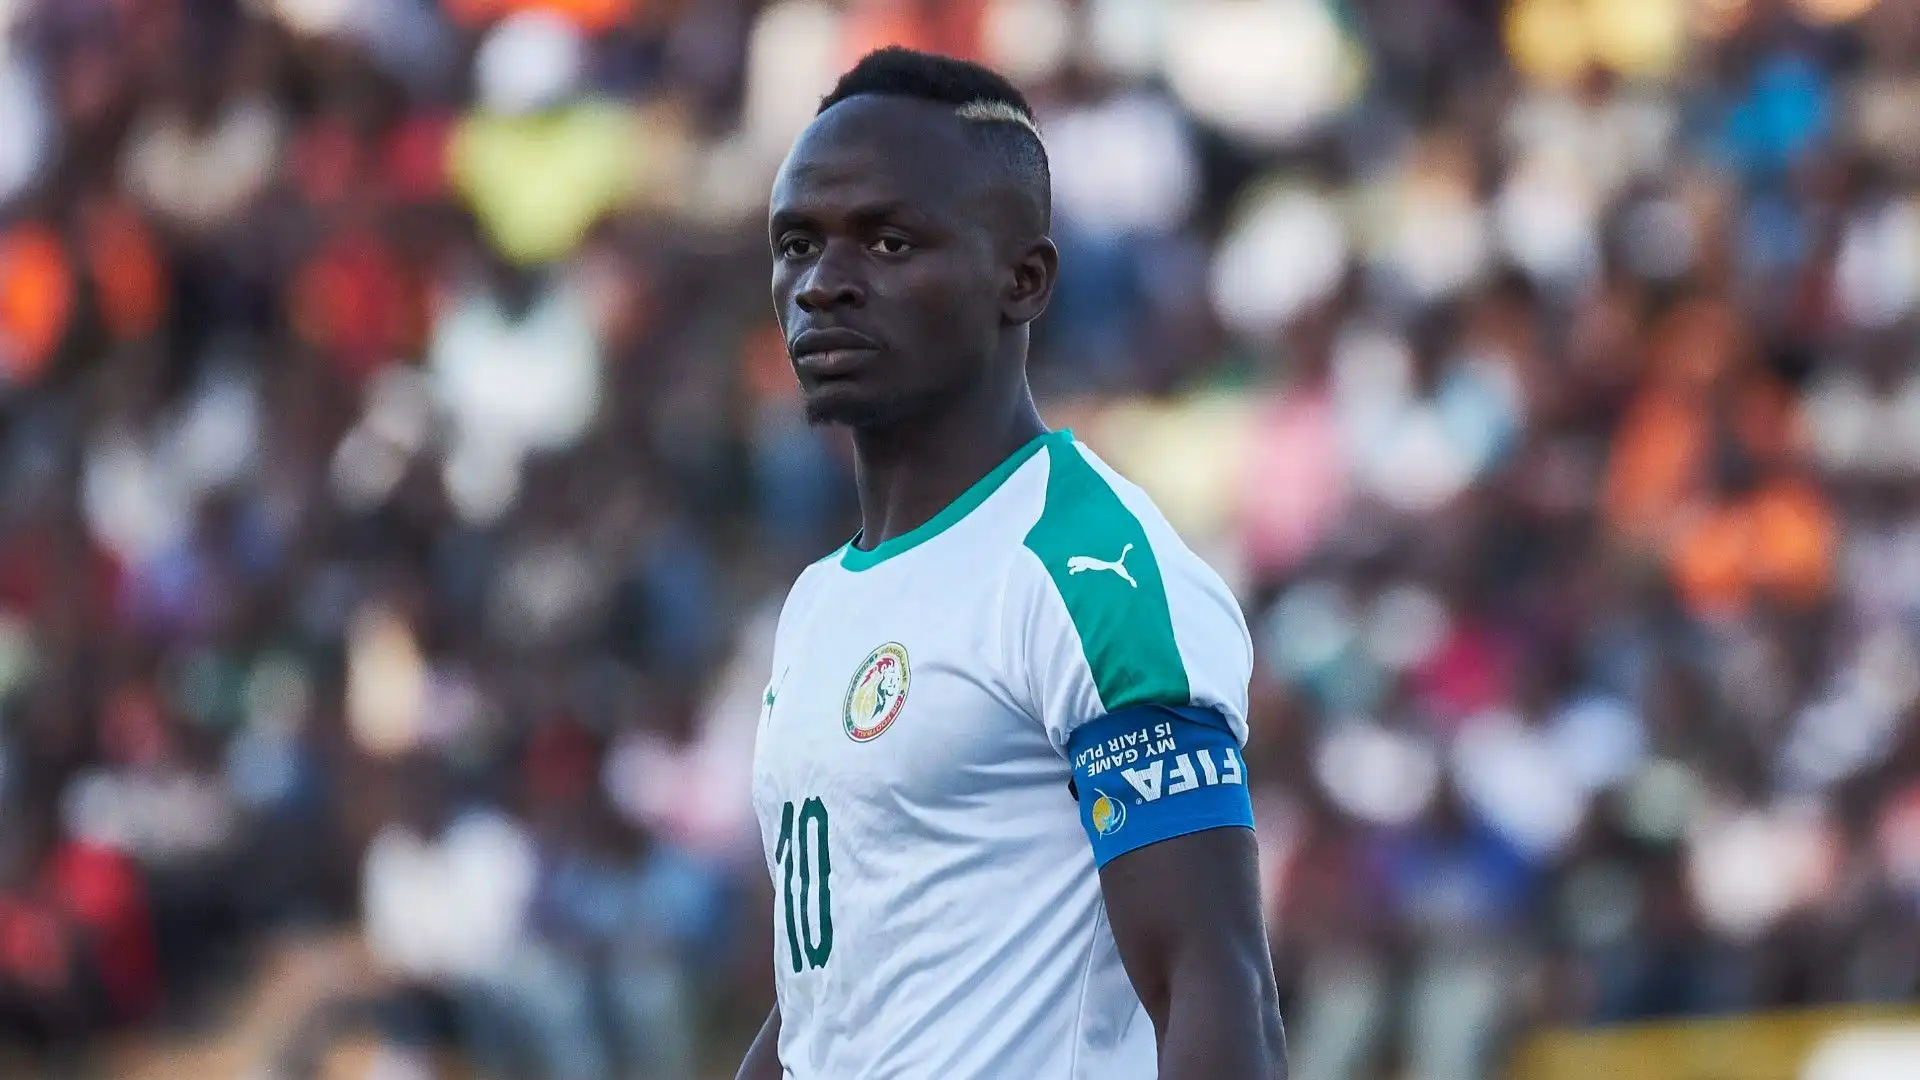 L'attaccante ha esordito con la nazionale maggiore senegalese nel 2012: da allora ha giocato 93 partite